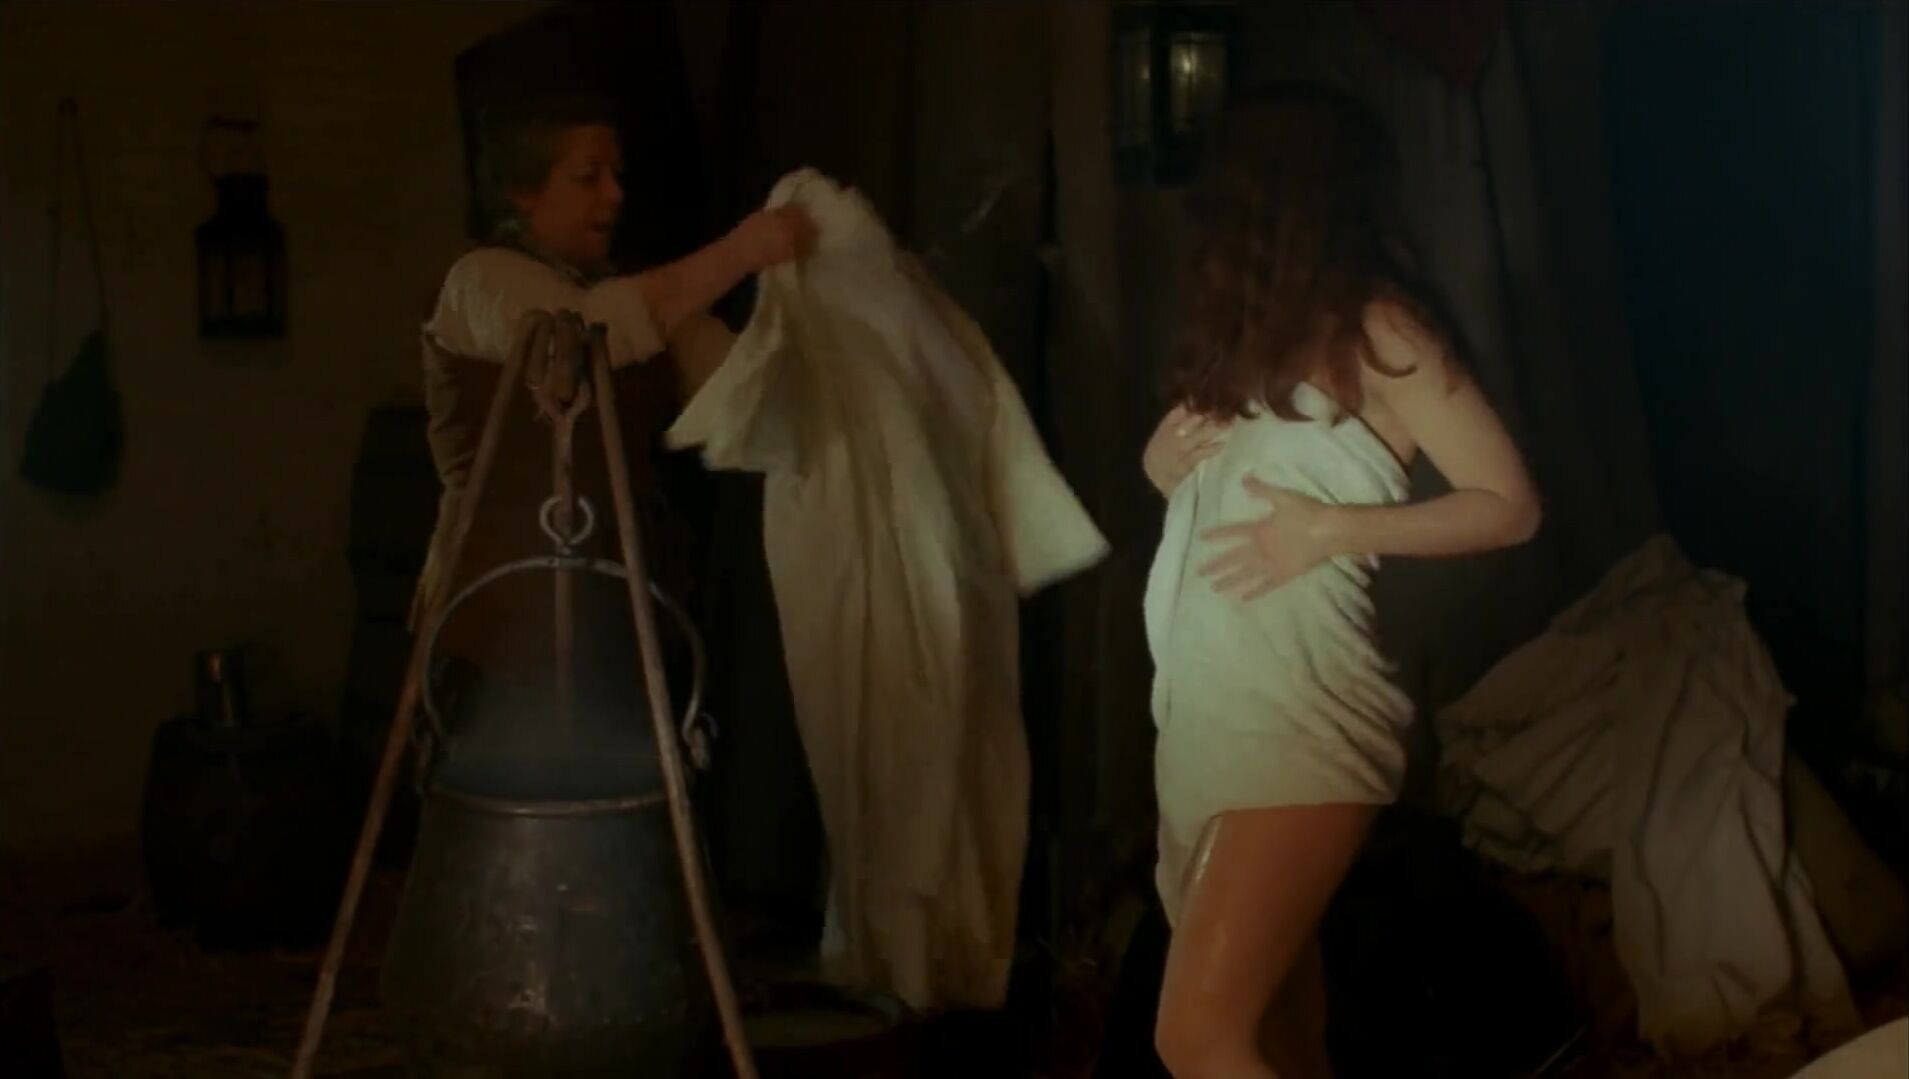 Submissive Koo Stark nude in Cruel Passion obscene HD sex scene where she is coerced into sex (1977) Comedor